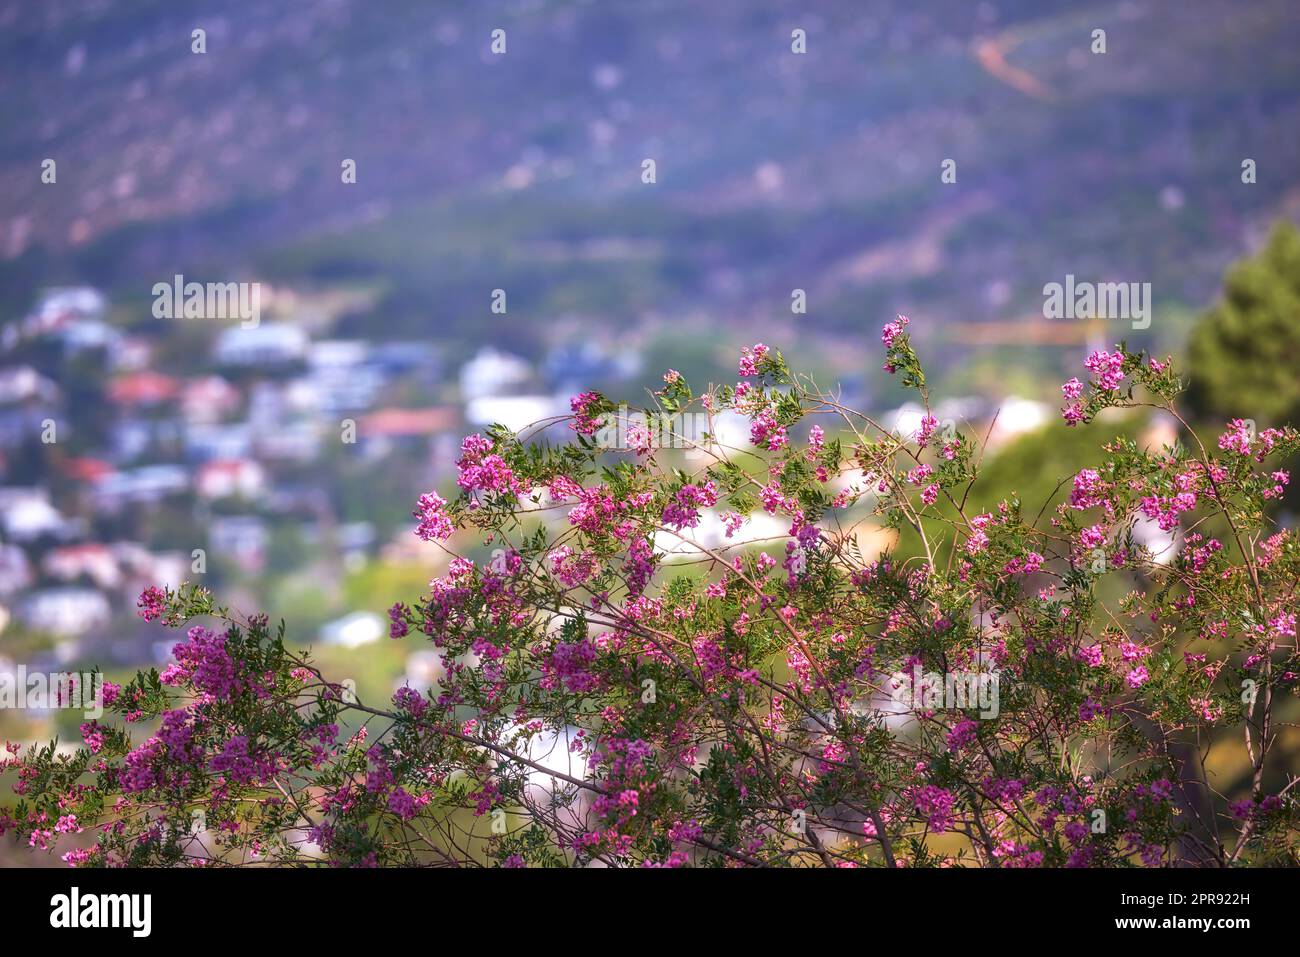 Fiore rosa su steli verdi che crescono su un lato di collina sullo sfondo urbano della città. Primo piano dell'ambiente paesaggistico con piante autoctone e specie di fiori che crescono sulla montagna Foto Stock